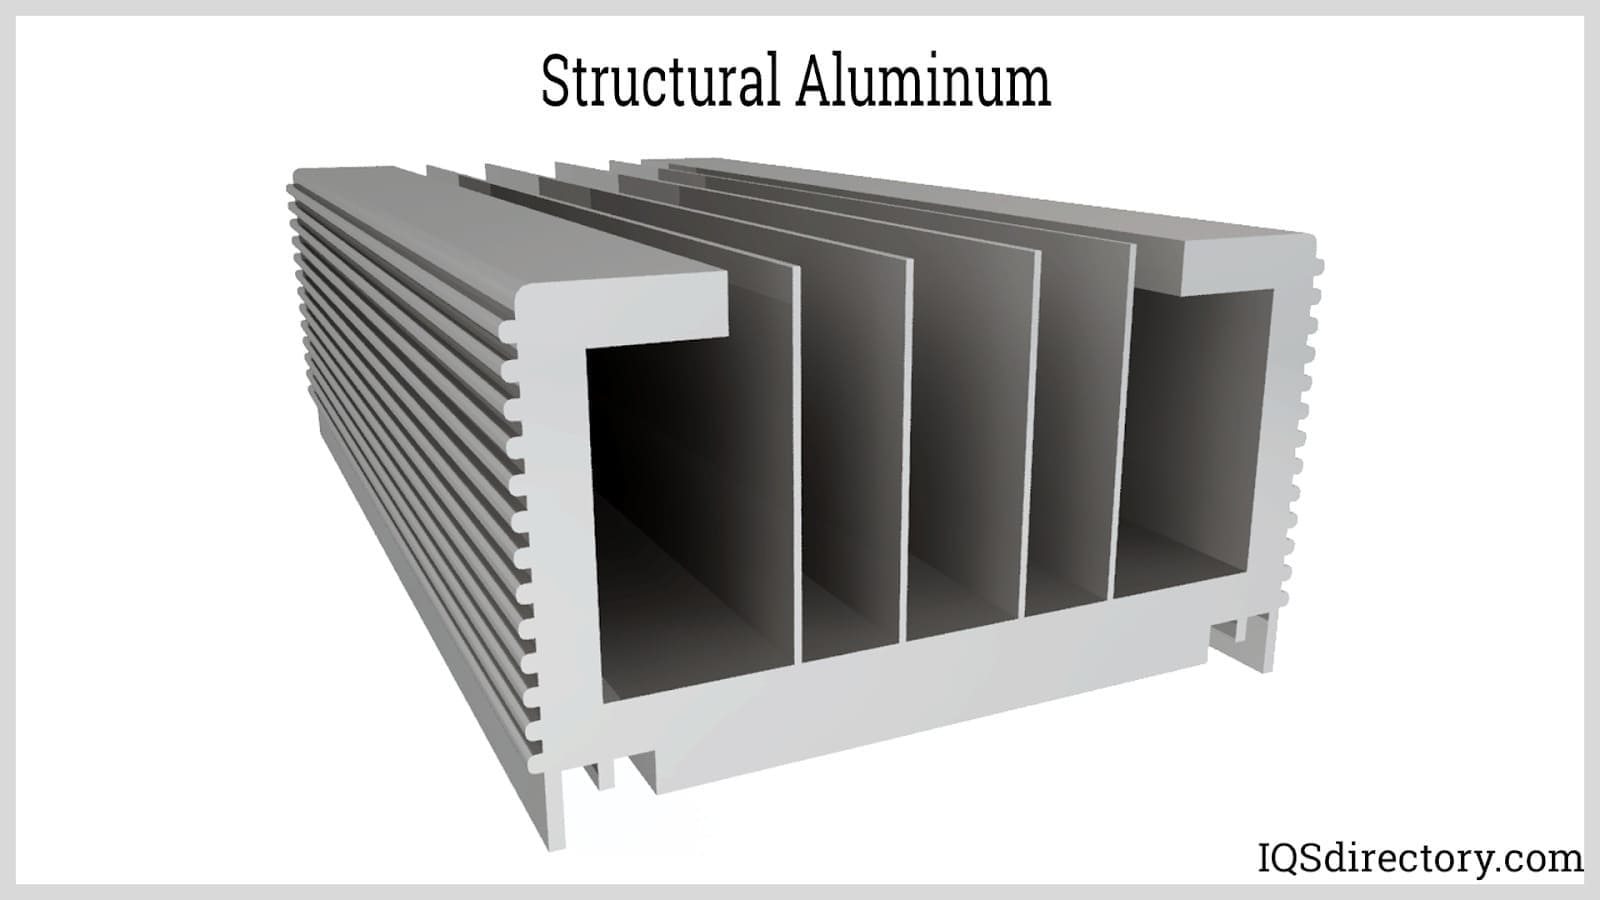 Structural Aluminum